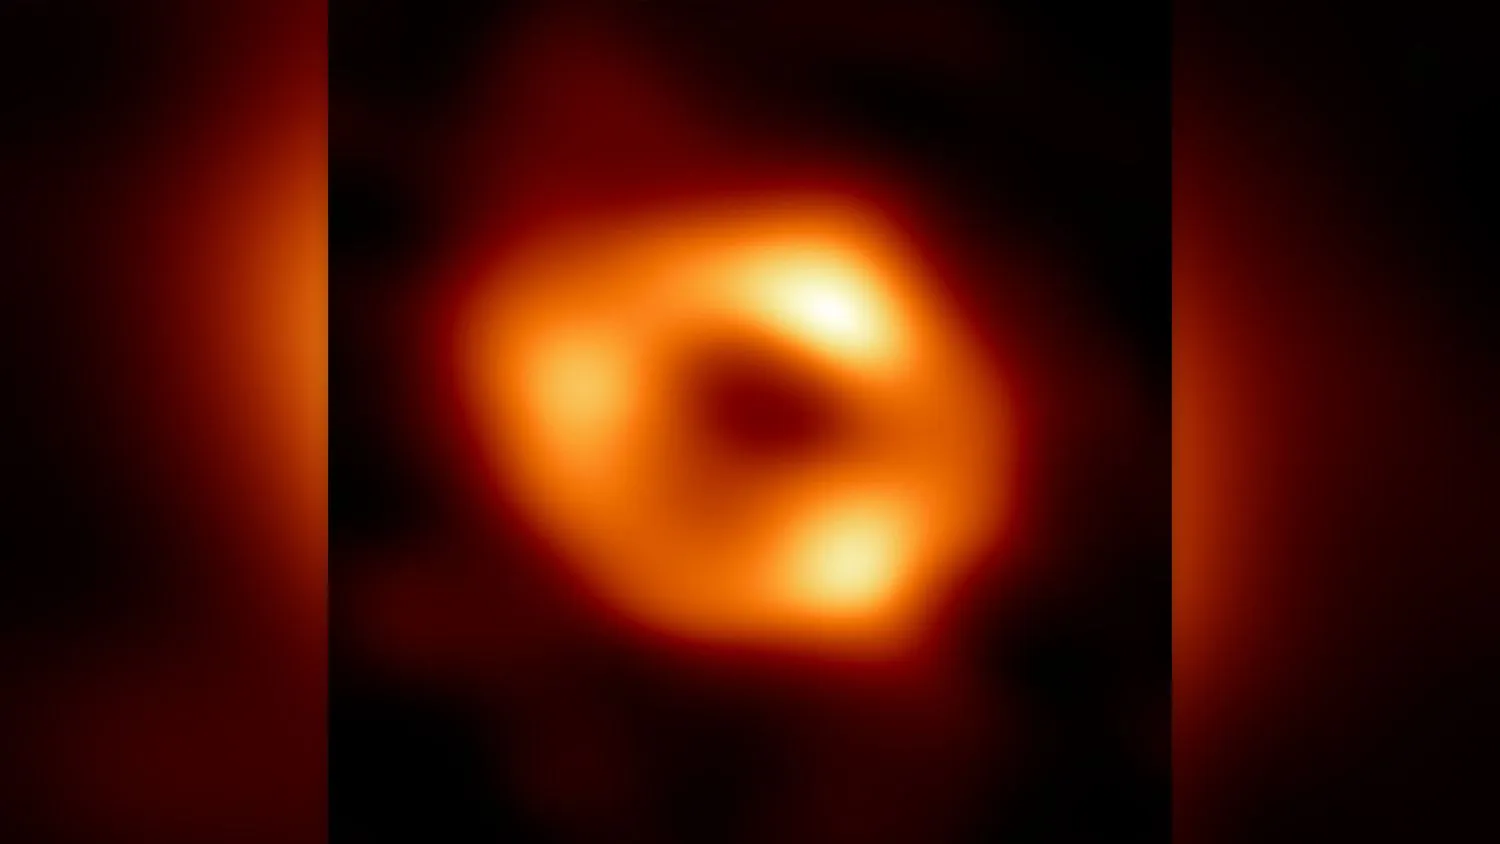 Ein Bild von Sagittarius A*, dem supermassiven schwarzen Loch im Herzen der Milchstraße, von dem Wissenschaftler glauben, dass es sich so schnell dreht, wie es nur kann.